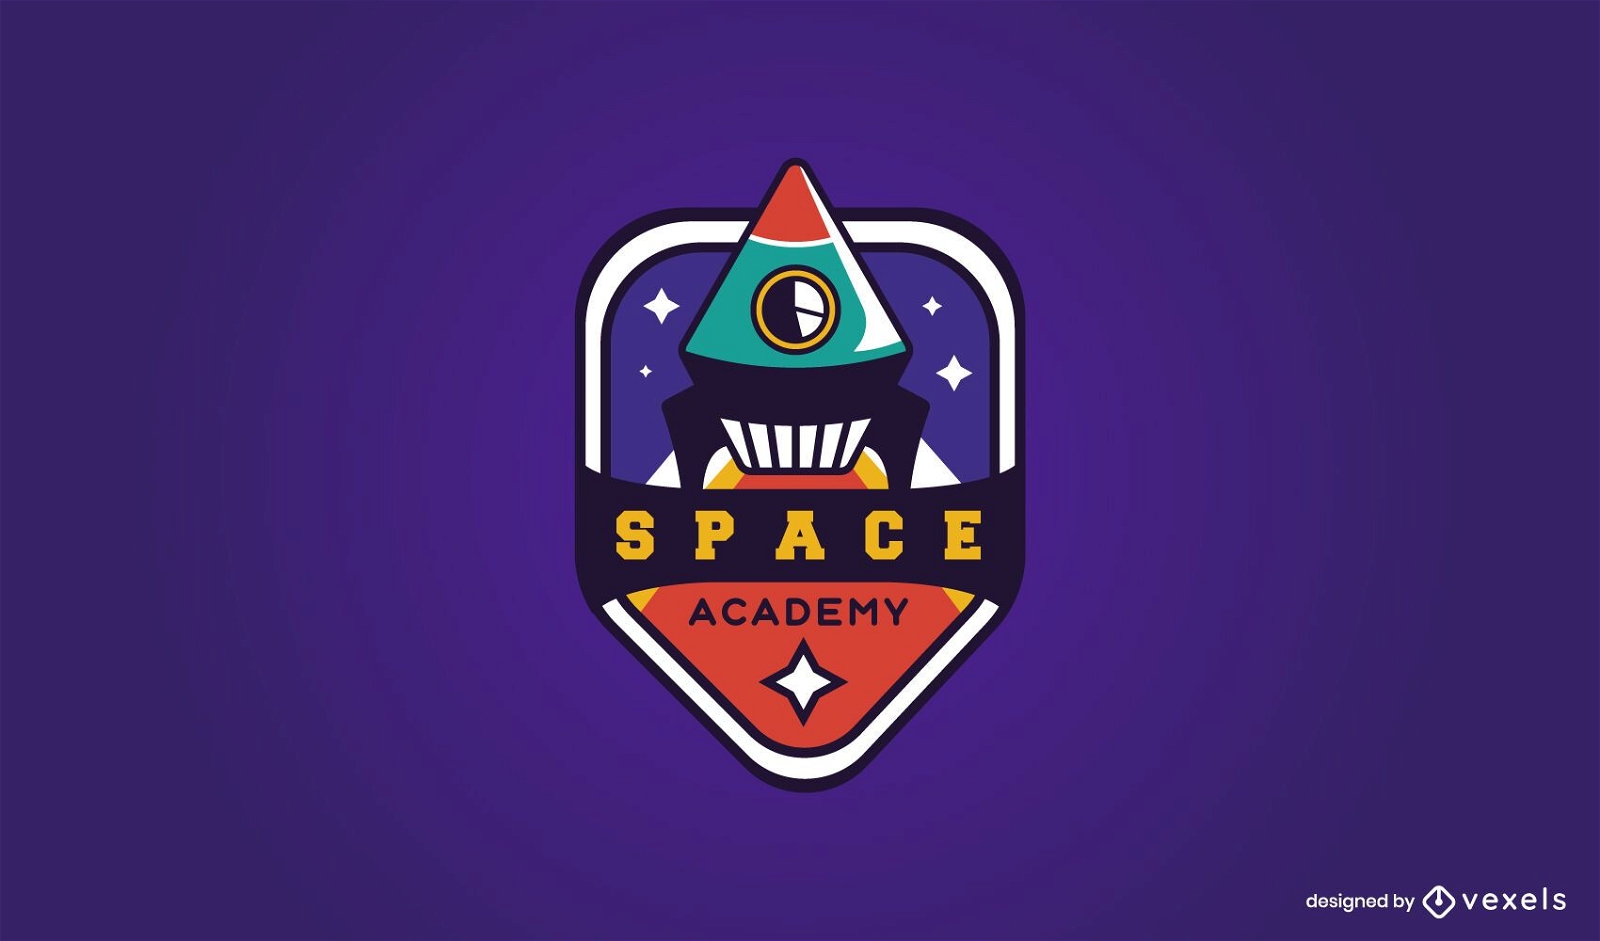 Space academy logo design